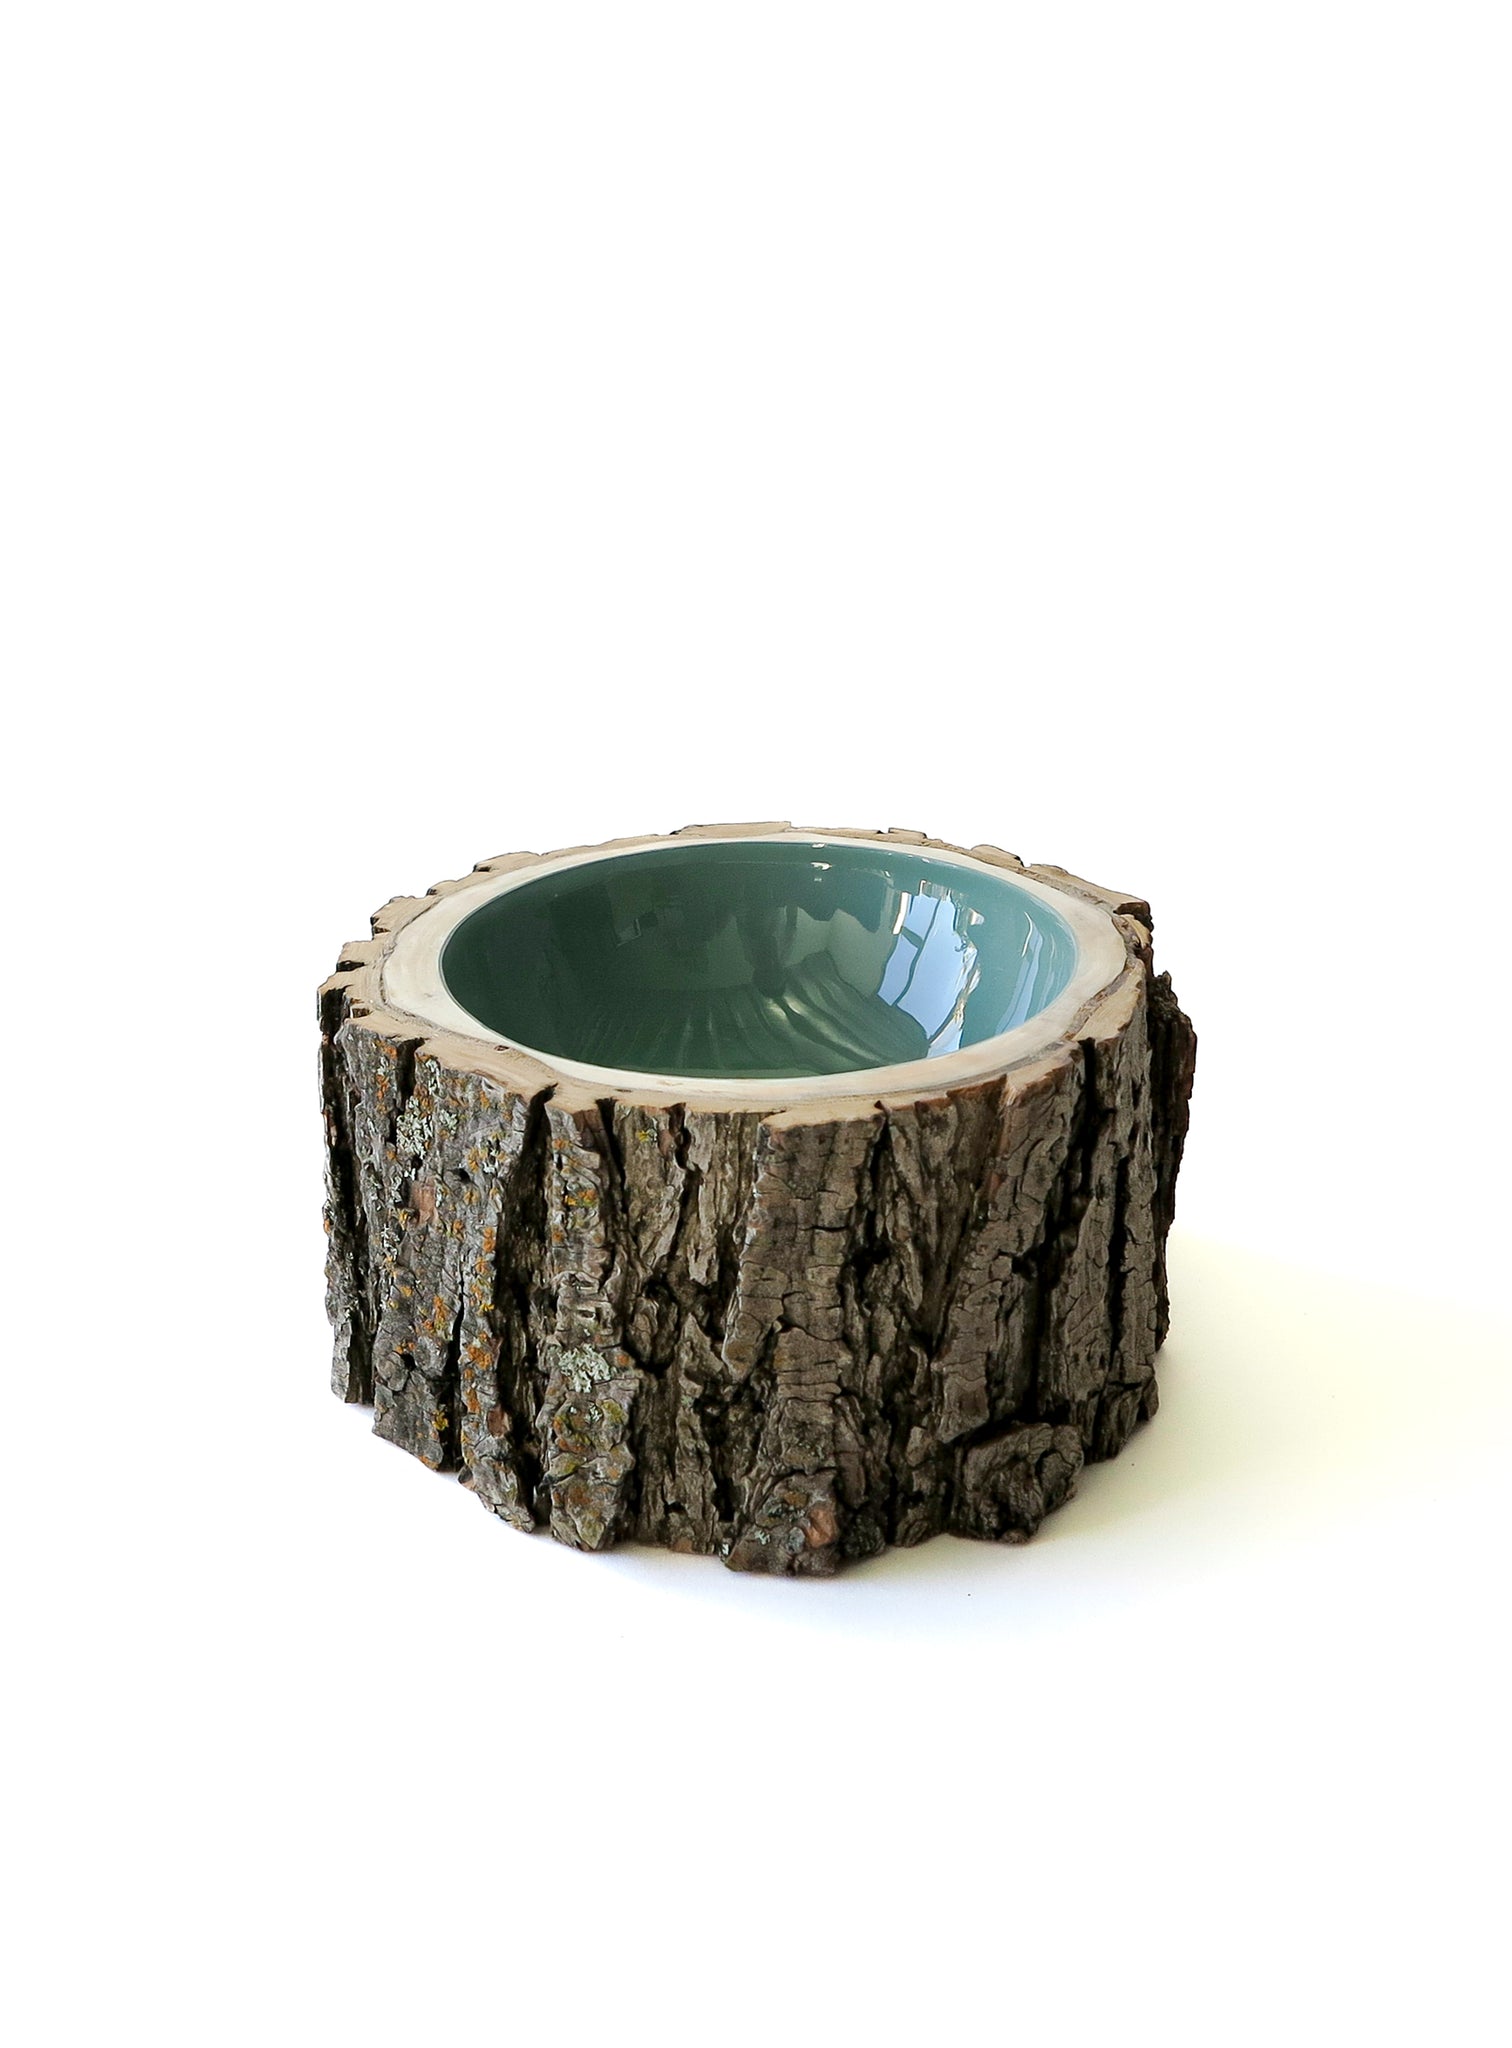 Log Bowl | Size 6 | Sage